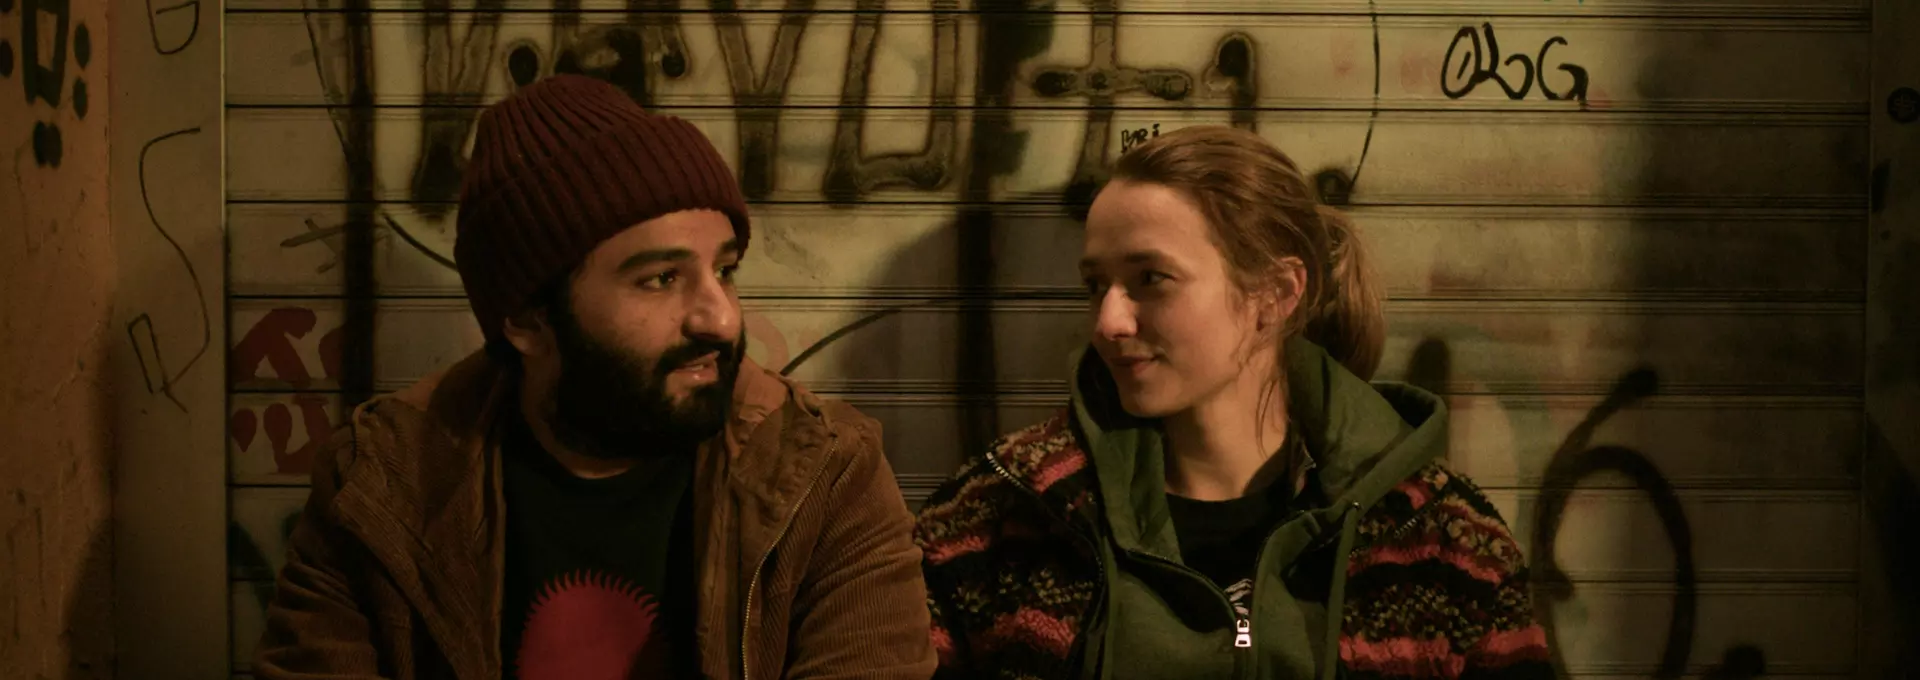 En mann og en kvinne i 20-årene sitter foran en vegg med tagging og prater. 